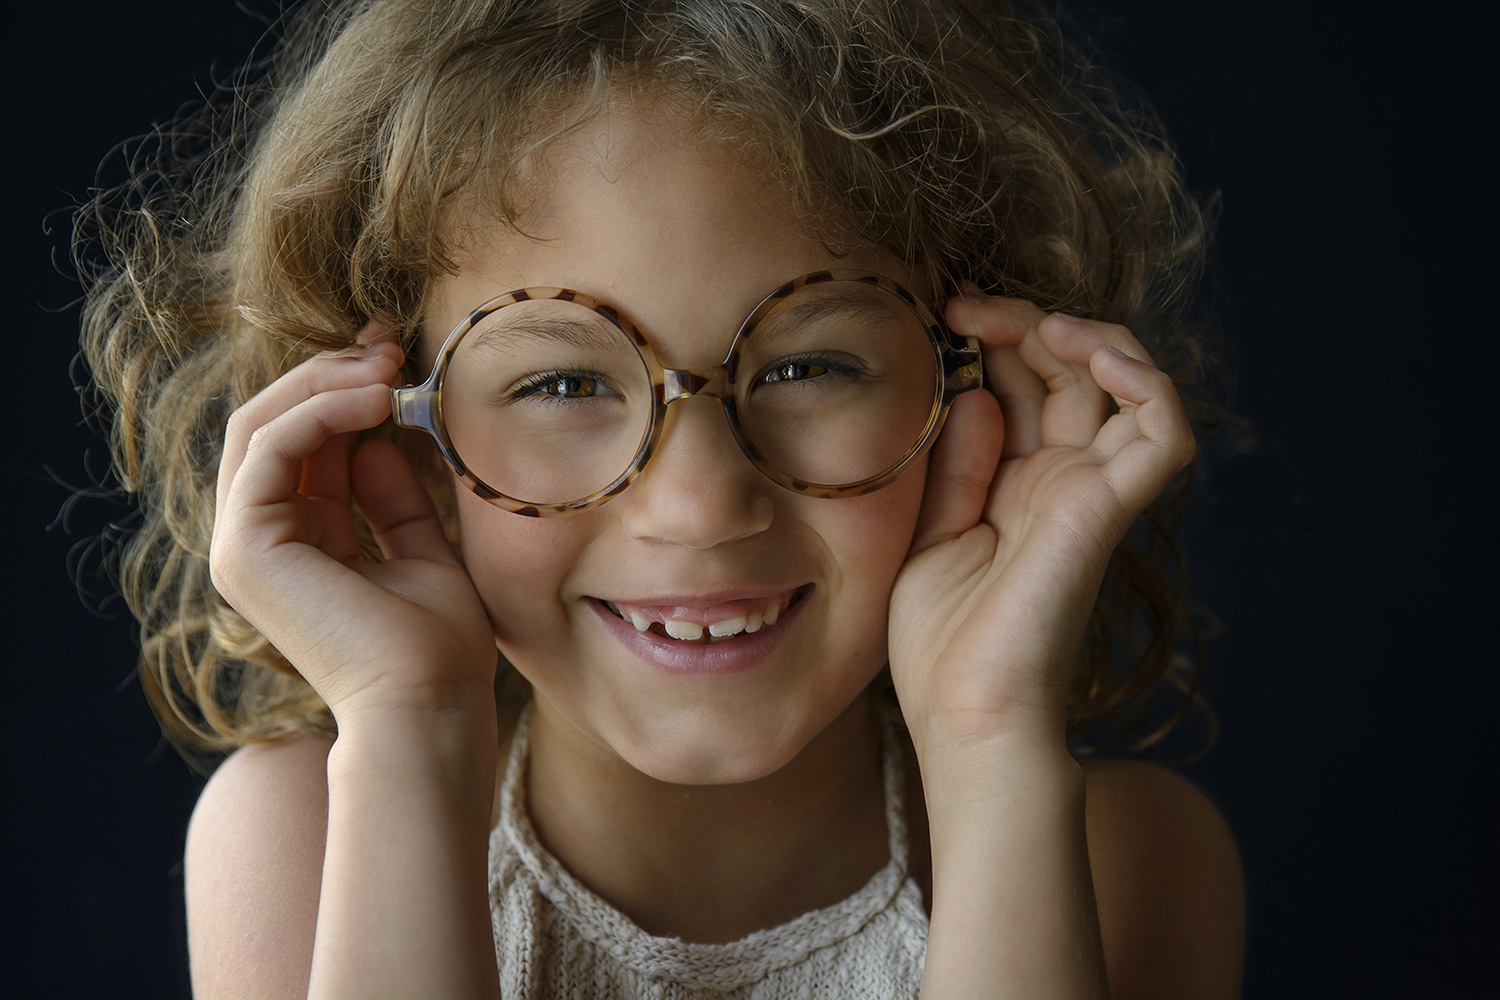 Professionele fotografie vrolijk portret meisje met bril in studio.jpg